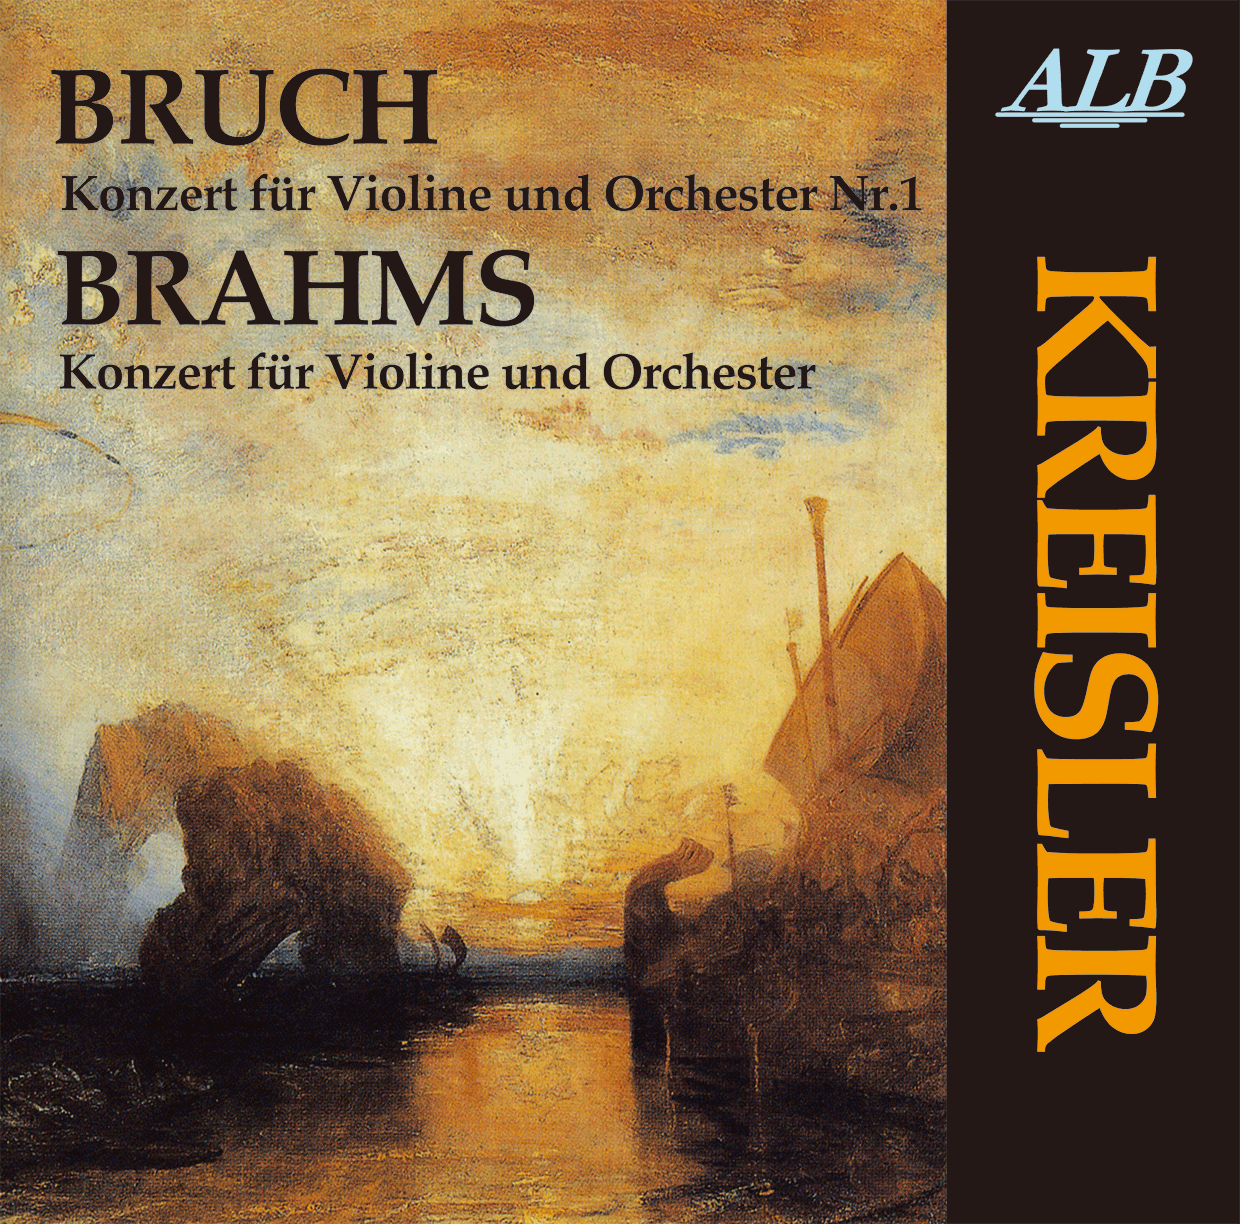 ALB18,クライスラー,ブルッフ ヴァイオリン協奏曲 第１番,ブラームス ヴァイオリン協奏曲